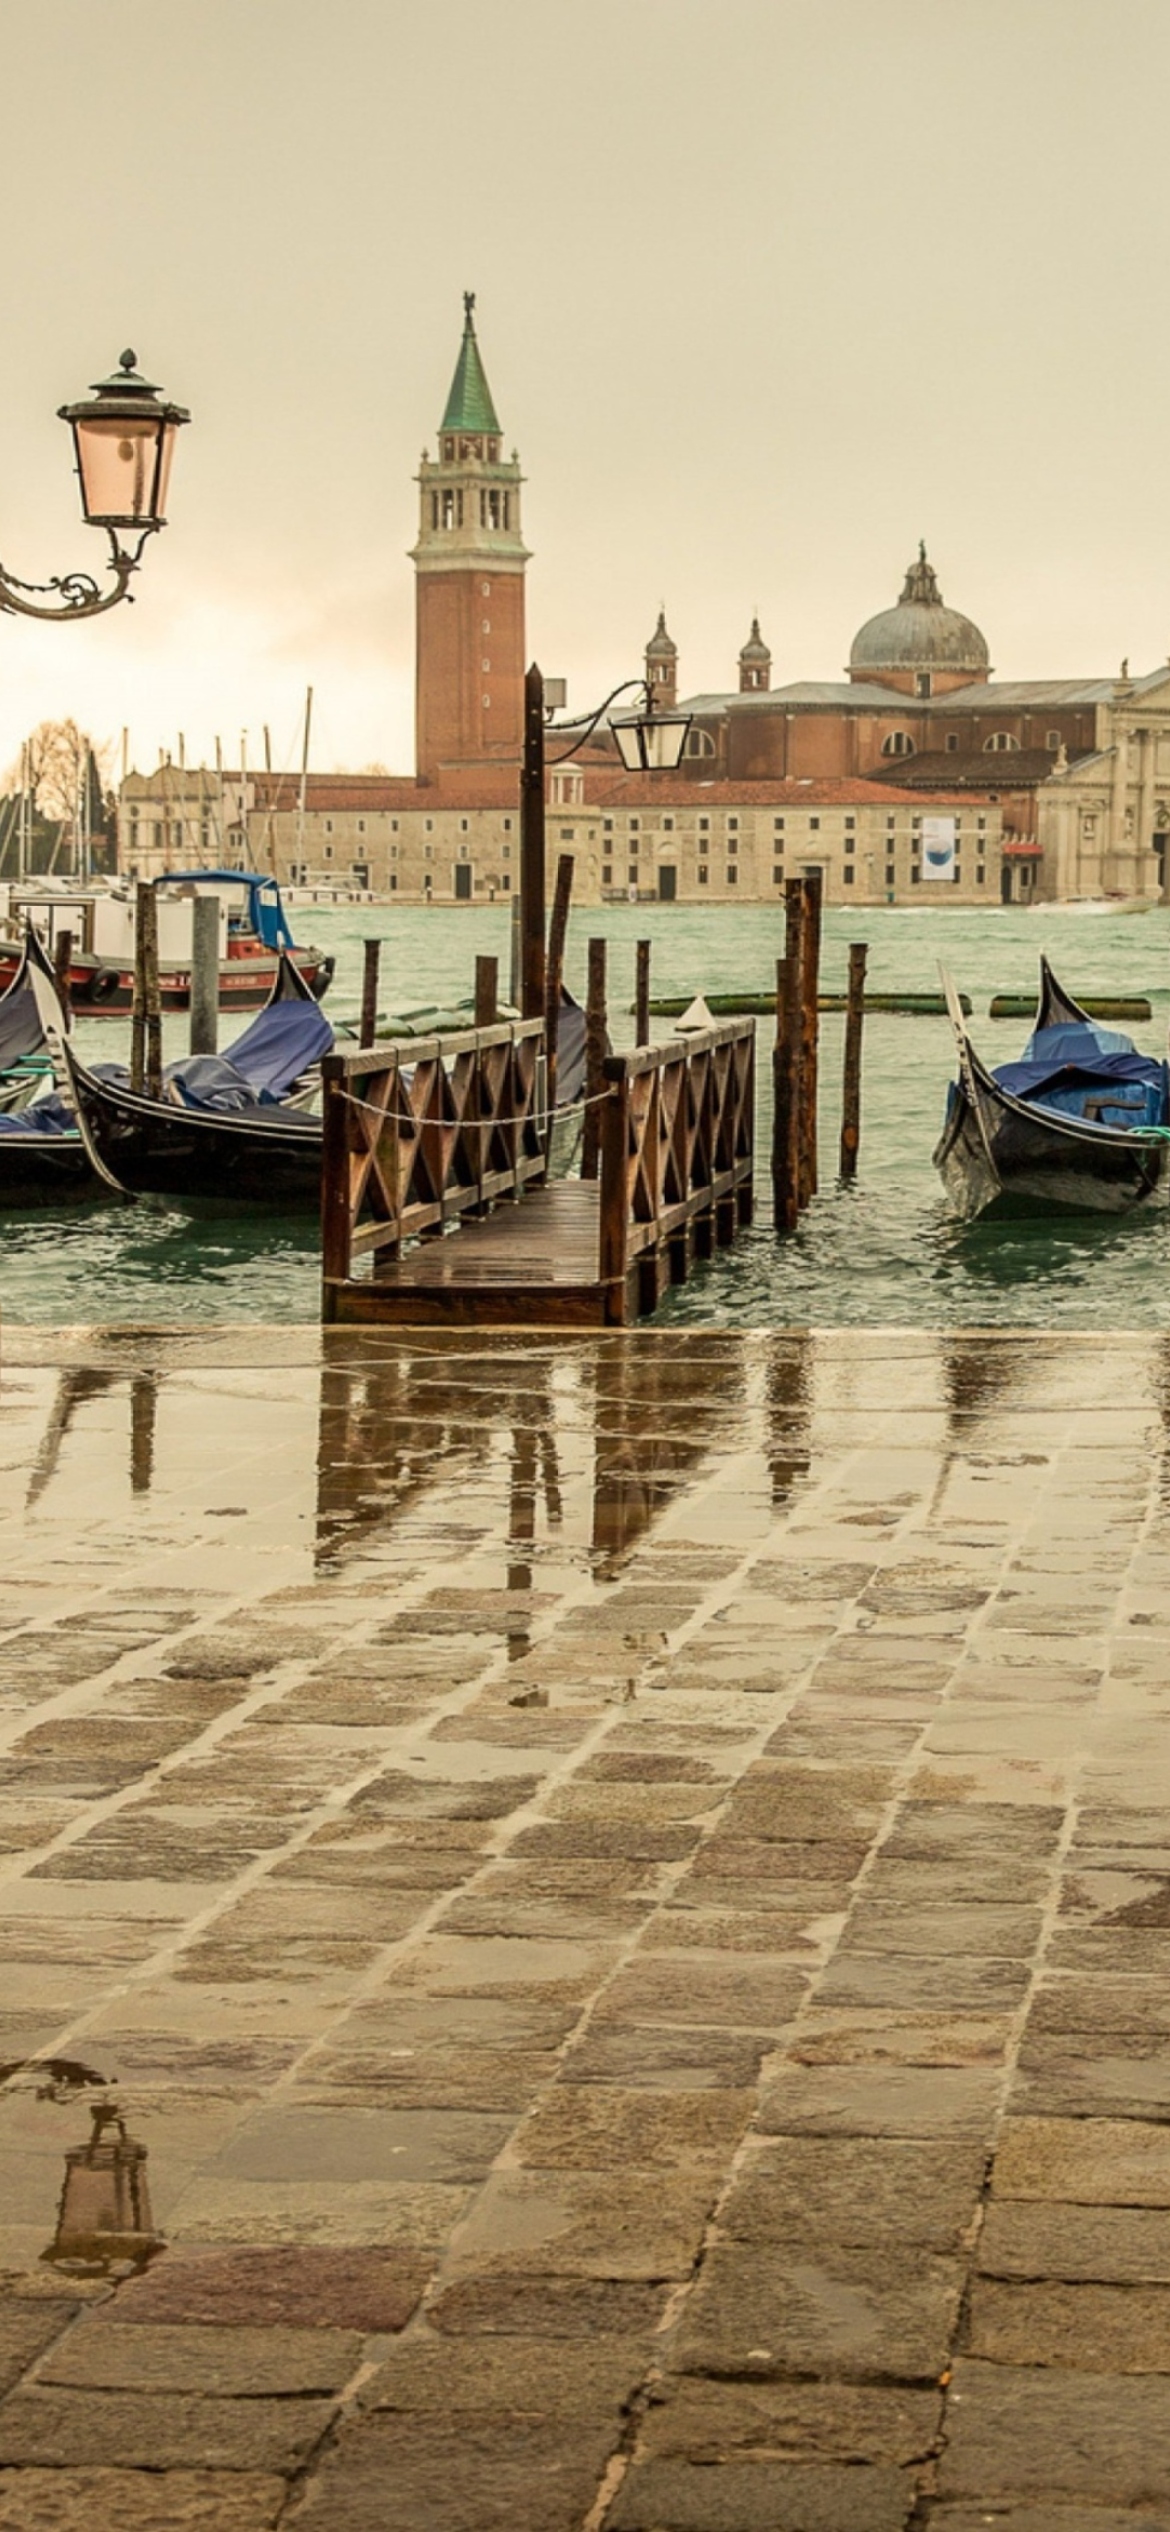 Sfondi Venice - San Giorgio Maggiore 1170x2532